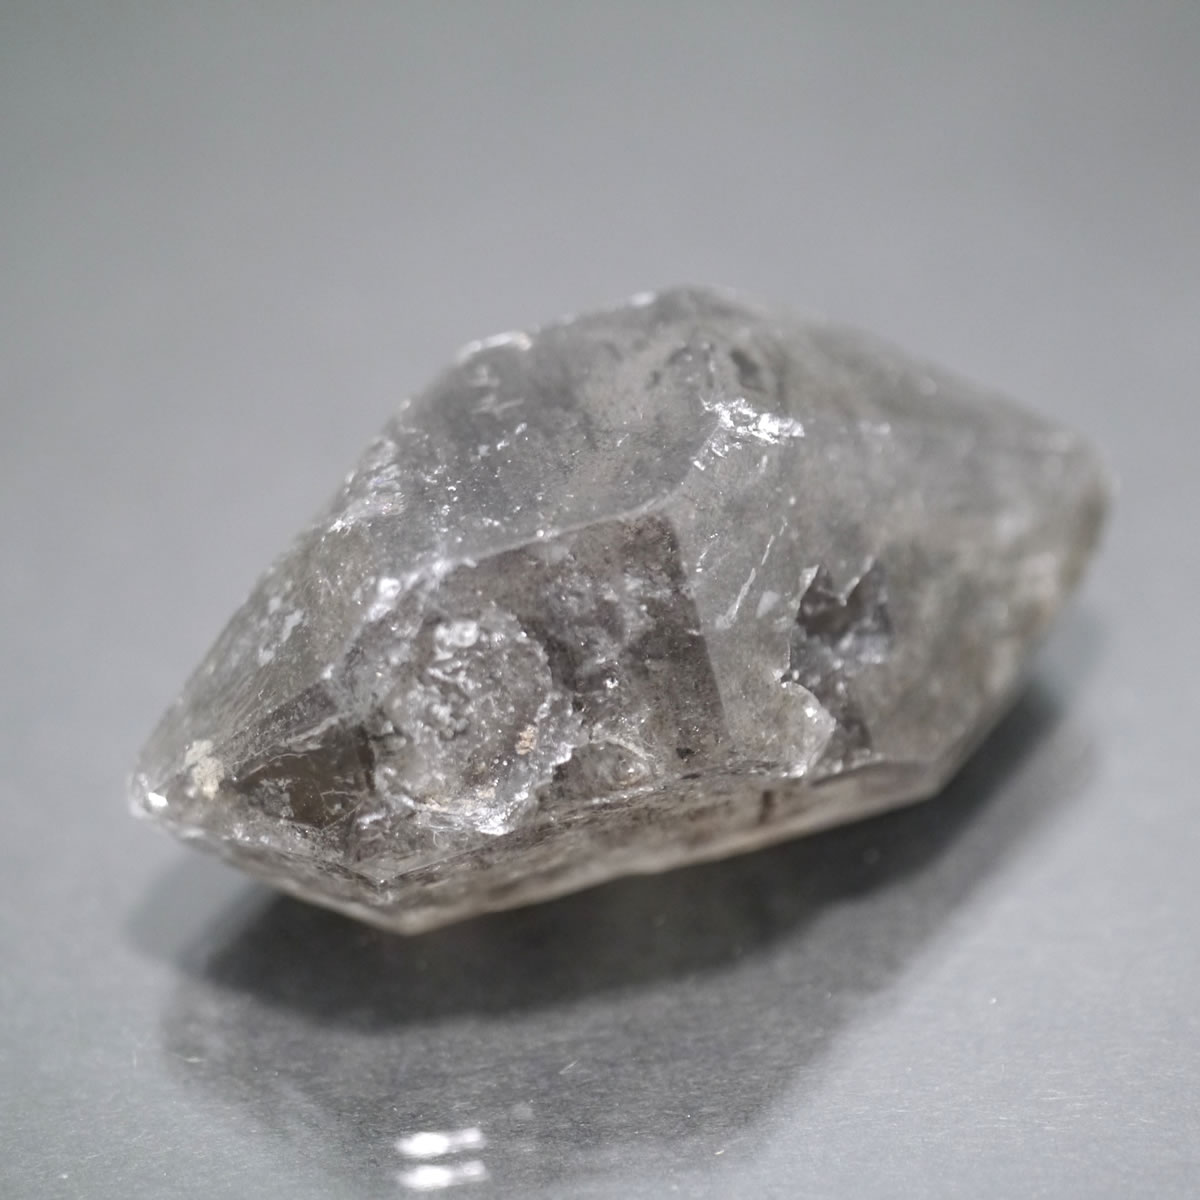 水晶ポイント 1点物 水晶ポント インドの神様ヒンズー教ガネーシャ神の名前がついた山群です。 ガネッシュ・ヒマールはネパール中北部に位置するヒマラヤ山脈に属する山群で、この神聖な土地で採取される水晶がこのヒマラヤ、エレスチャルポイント水晶です。 水晶ポイントは石英質岩上で六角石柱の結晶が発生し、長い年月をかけて大きく成長していった物で、エレスチャル(骸骨水晶）とは、独特の外観である骸晶（結晶面が凹んだ結晶）や内包物を有する水晶で様々な特徴を備えています。 その主な特徴は平面部分に陥没や亀裂があったり、内部に水や他の鉱物が入っていたり、ダブルターミネーター(両剣水晶）や本体が短い物が多いなどがあります。この特徴をすべて備えているのではなく、傾向的に多い特徴となっております。 サイズにつきまして ある程度の誤差がございます。 取扱方法 壊れ易い為、衝撃を与えないで下さい。また、厳重に梱包しておりますので到着時に無理やり開封すると 先端が欠ける場合がございますので慎重な開封をお願い致します。 産地等 ・天然石：水晶ポイント ・産地：ヒマラヤ ガネーシュヒマール産 　　　　　　　　　 配送方法につきまして 宅配便専用商品です。ポスト投函配送はご利用になれません。ポスト投函配送で御注文を頂いた場合は、 当店にて宅配便にご変更させて頂きますのでご了承下さい。 天然石につきまして 当店の天然石は海外より直接買い付けてきております。新品の物ではございますが、天然のものならではの 色むらやキズ、インクルージョン(内包物)やクラック(ヒビ)、欠けがある場合がございますのでご了承願います。またヒマラヤ ガネーシュヒマール産　エレスチャル ダブルポイント水晶に関しましては先端が欠けている物も通常品として取り扱いしておりますのでご了承くださいませ。なお1点物ではございますが物自体(同産地の同種類の石）は同じ商品ですのでレビューを残させて戴いております。 ですのでサイズや価格等に対するレビュー評価は現物と異なる場合がございます。 類似商品はこちらヒマラヤ ガネーシュヒマール産　エレスチャル 1,980円ヒマラヤ ガネーシュヒマール産　エレスチャル 2,420円ヒマラヤ ガネーシュヒマール産　エレスチャル 2,750円ヒマラヤ ガネーシュヒマール産　エレスチャル 1,980円ヒマラヤ ガネーシュヒマール産　エレスチャル 3,520円ヒマラヤ ガネーシュヒマール産　エレスチャル 1,980円ヒマラヤ ガネーシュヒマール産　エレスチャル 1,980円ヒマラヤ ガネーシュヒマール産　エレスチャル 1,540円ヒマラヤ ガネーシュヒマール産　エレスチャル 4,180円新着商品はこちら2024/5/3アメリカ産アマゾナイトAAA 4mm ブレスレ1,980円～2024/4/28手書きのチベタン タンカ 額装 500角 財宝85,800円2024/4/28手書きのチベタン タンカ 額装 500角 時輪85,800円再販商品はこちら2024/5/14サーフボード風香たて！　インセンスホルダー　/418円2024/5/12お香 オーガニックガーデンホワイトセージ香 ス220円2024/5/12お香 カモミール香 スティック /TULASI798円2024/05/15 更新 ヒマラヤ水晶 ガネーシュヒマール産（Ganesh Himal）ポイント ヒマラヤ水晶とは... 最も代表的な鉱物の一つで、こちらはヒマラヤ産出のものです。 &nbsp;